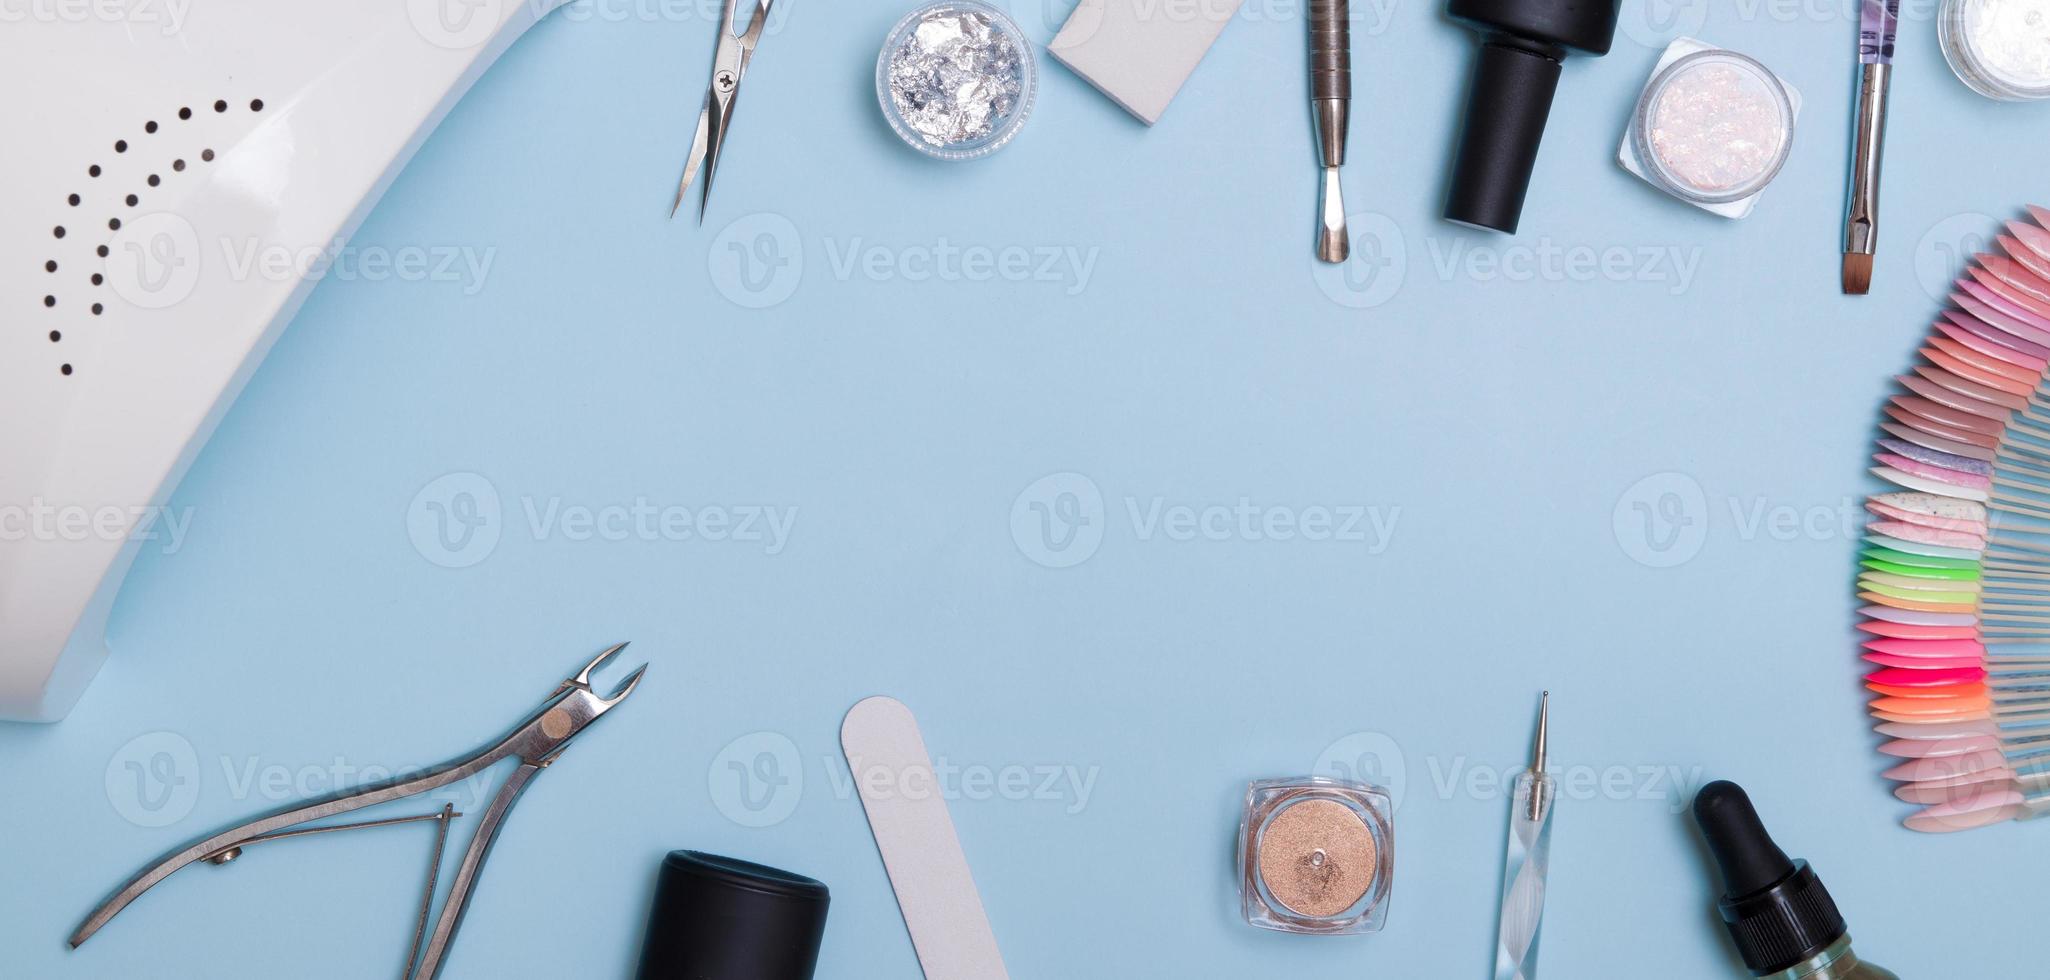 gereedschappen en materialen voor manicure plat leggen met kopieerruimte in bannerformaat. geknield op een blauwe achtergrond foto